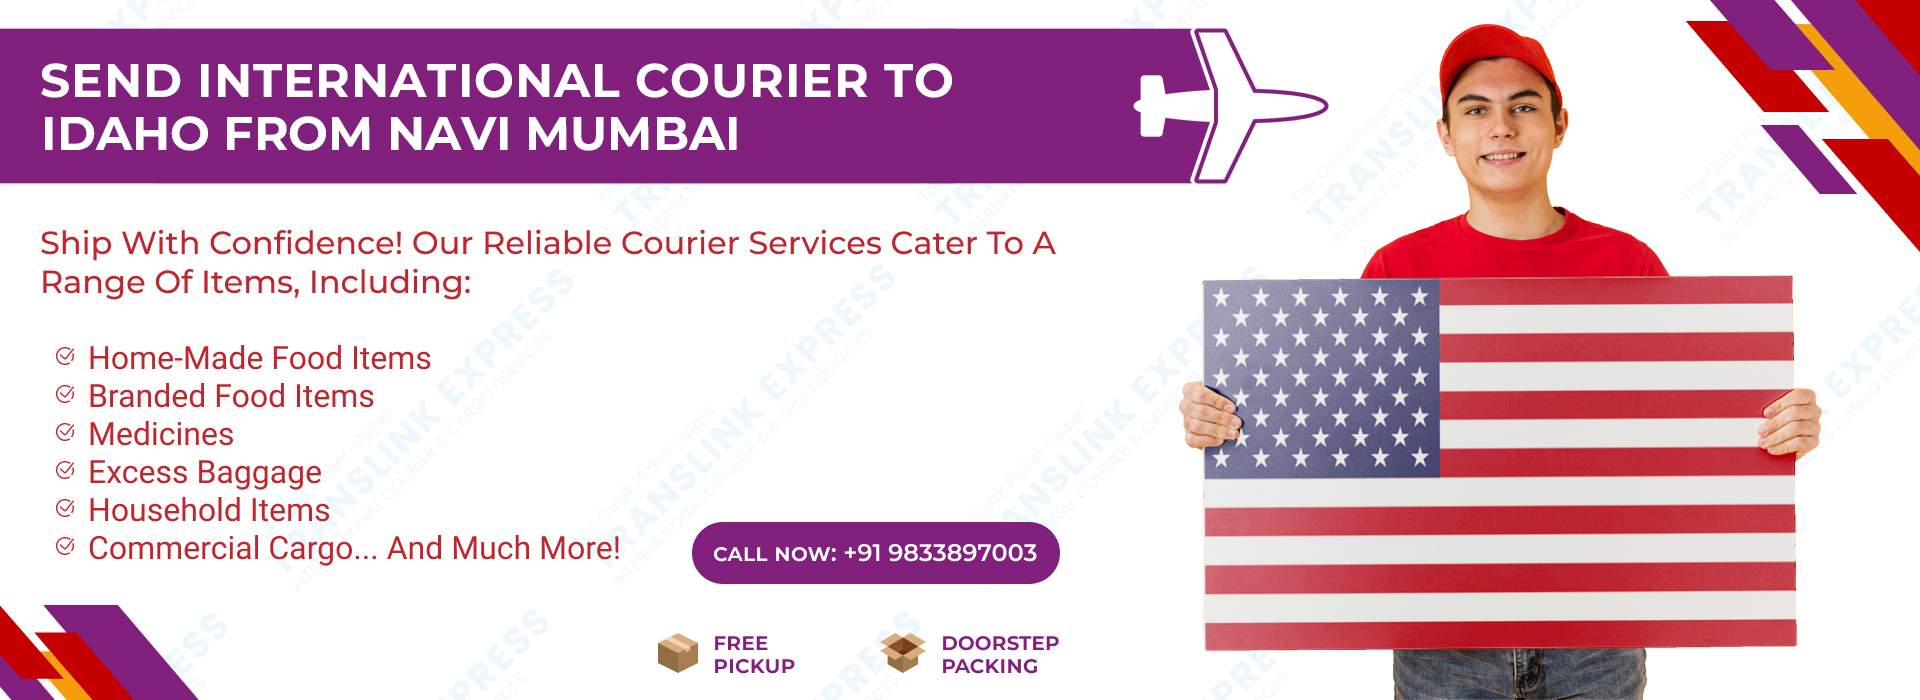 Courier to Idaho From Navi Mumbai